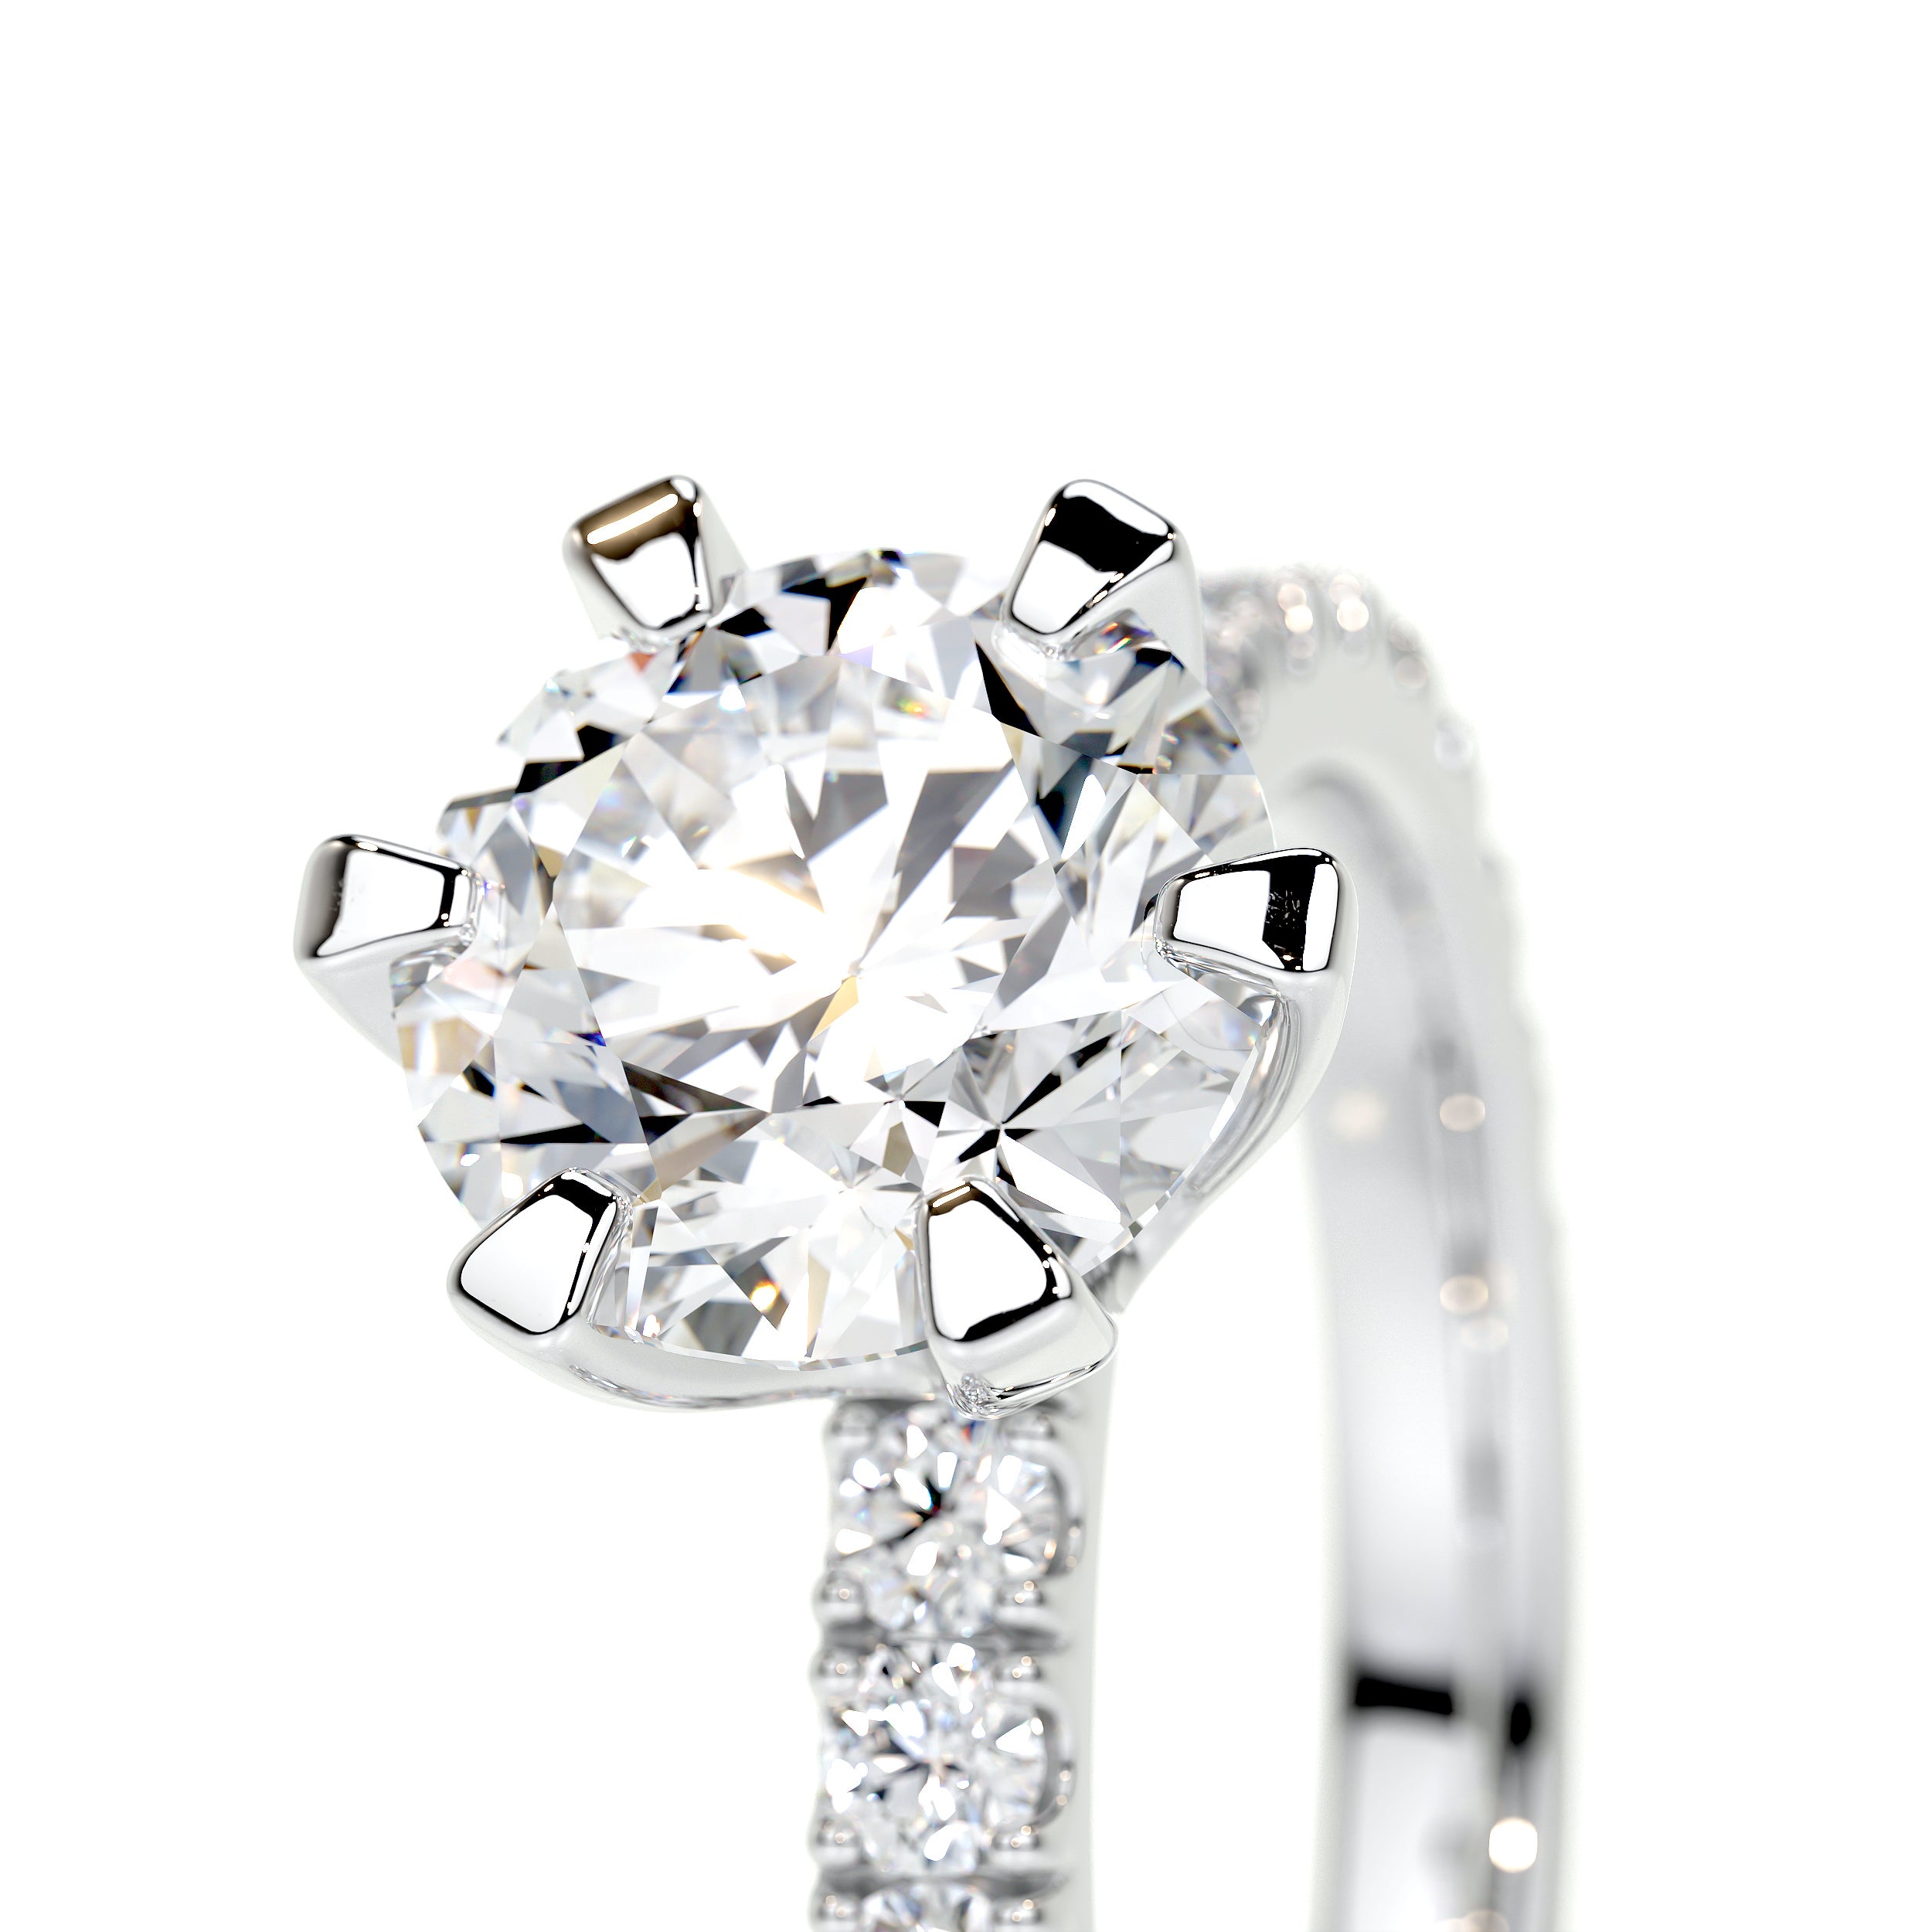 Veronica Lab Grown Diamond Ring   (2 Carat) -18K White Gold